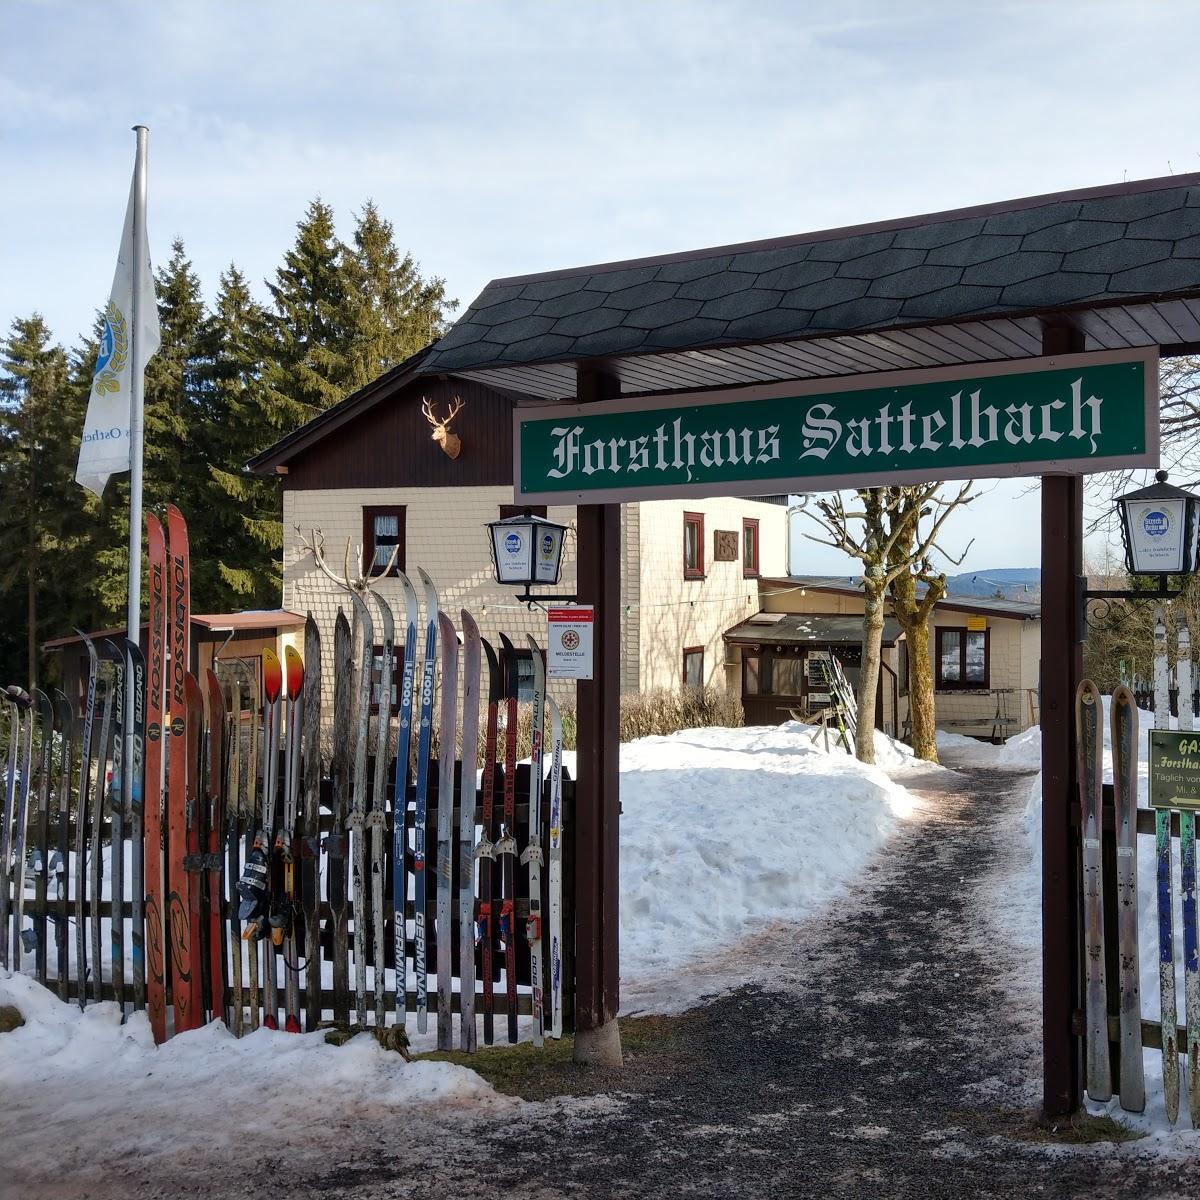 Restaurant "Forsthaus Sattelbach" in  Oberhof